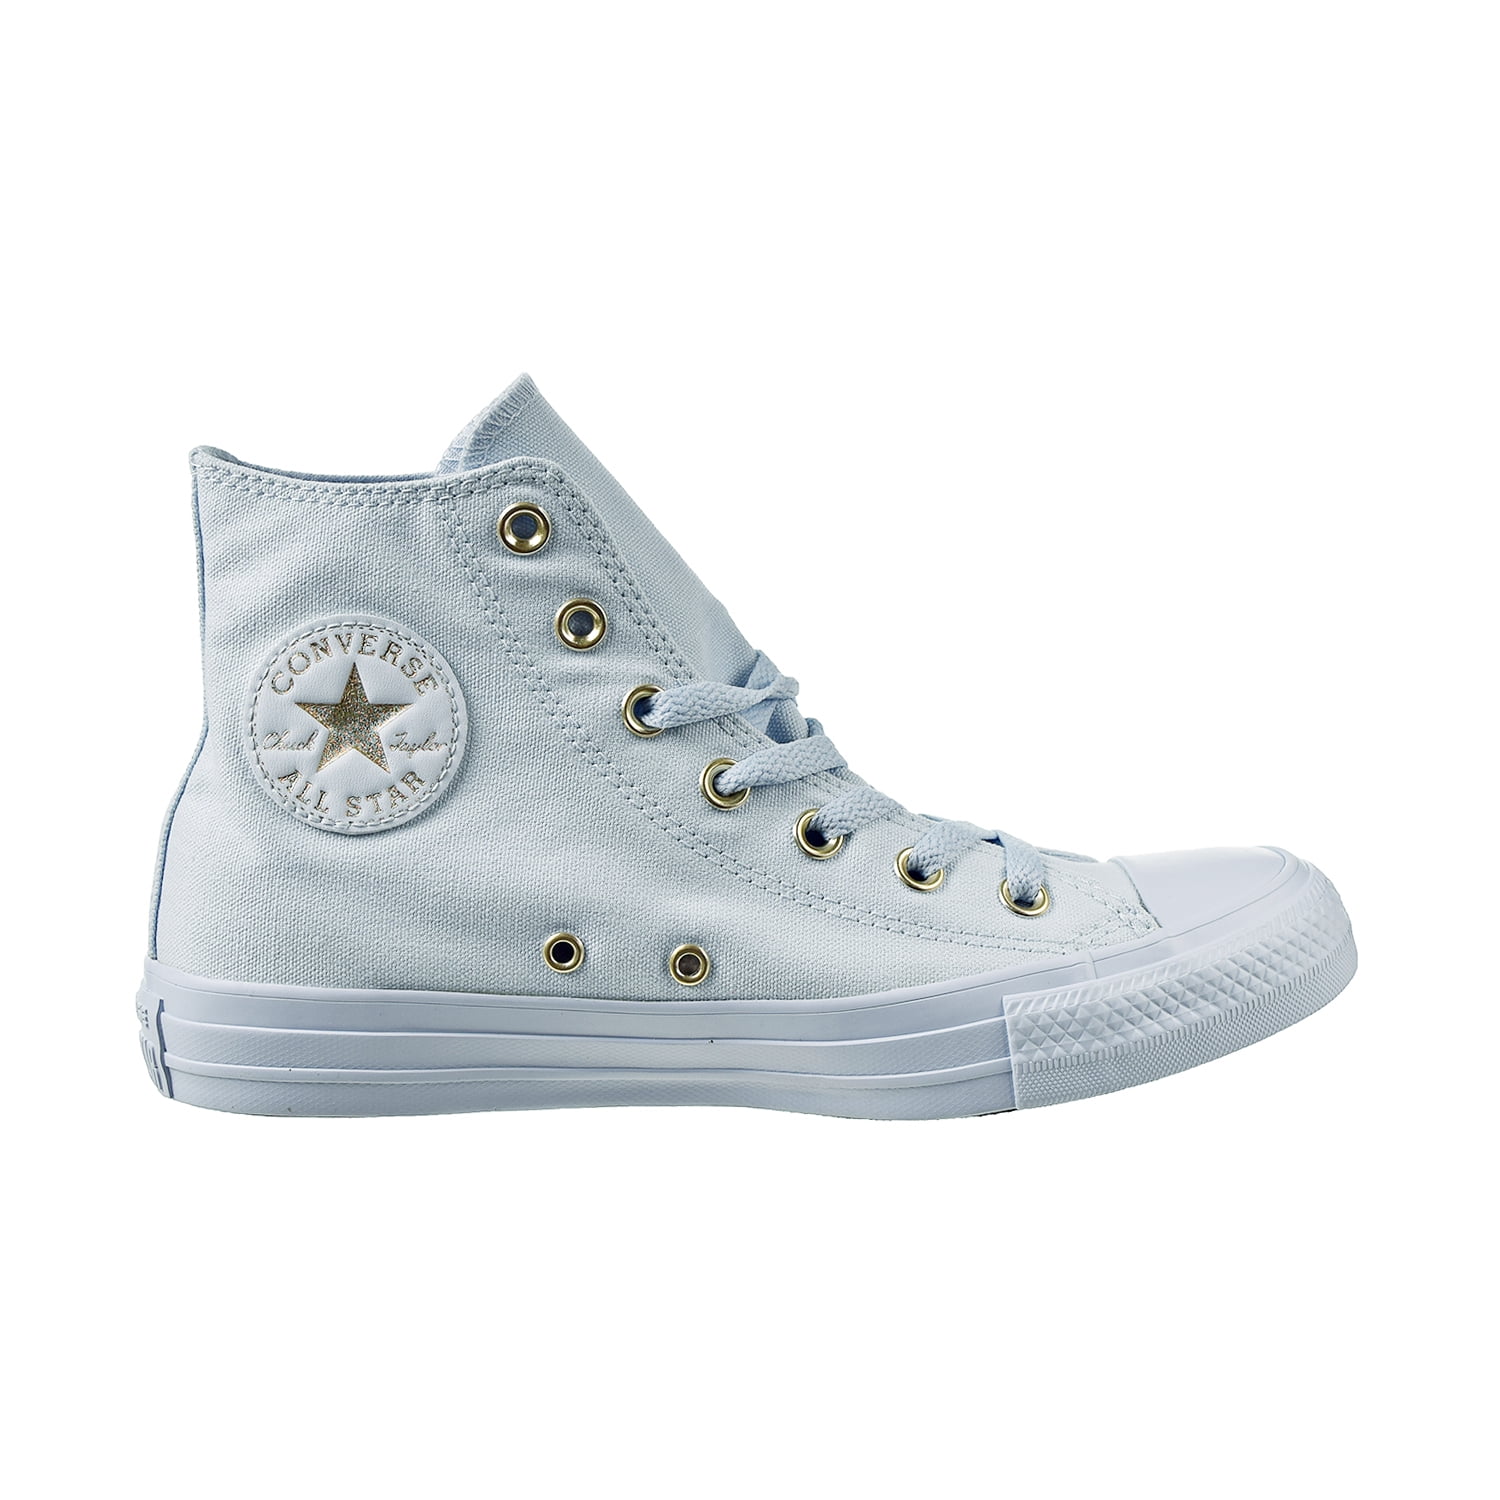 Converse All Star HI Shoes Blue 559939f - Walmart.com